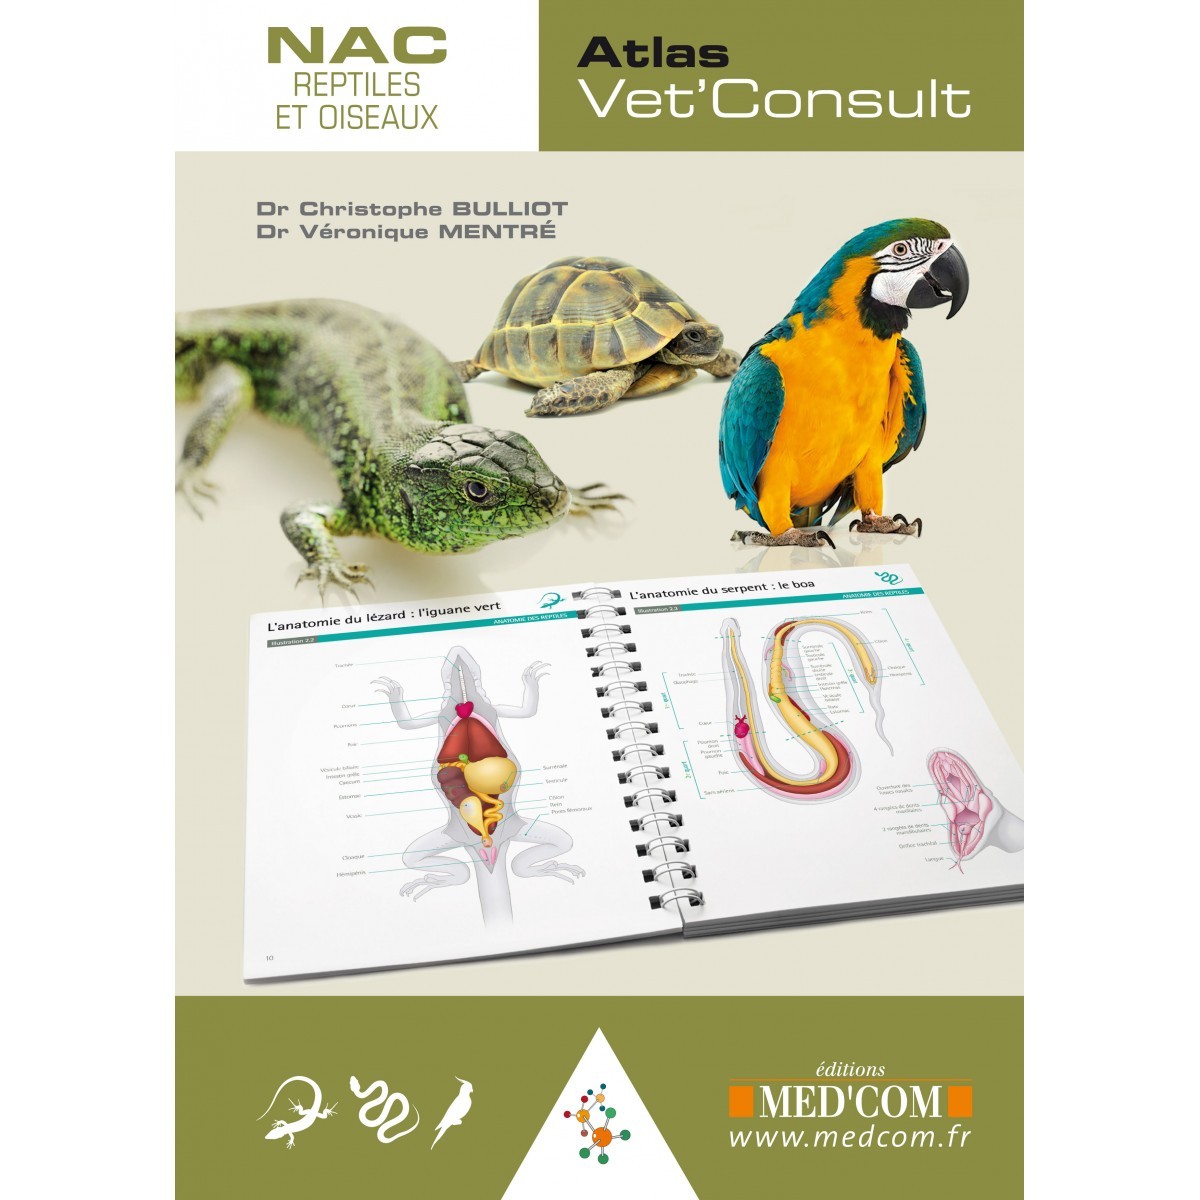 NAC, reptiles et oiseaux